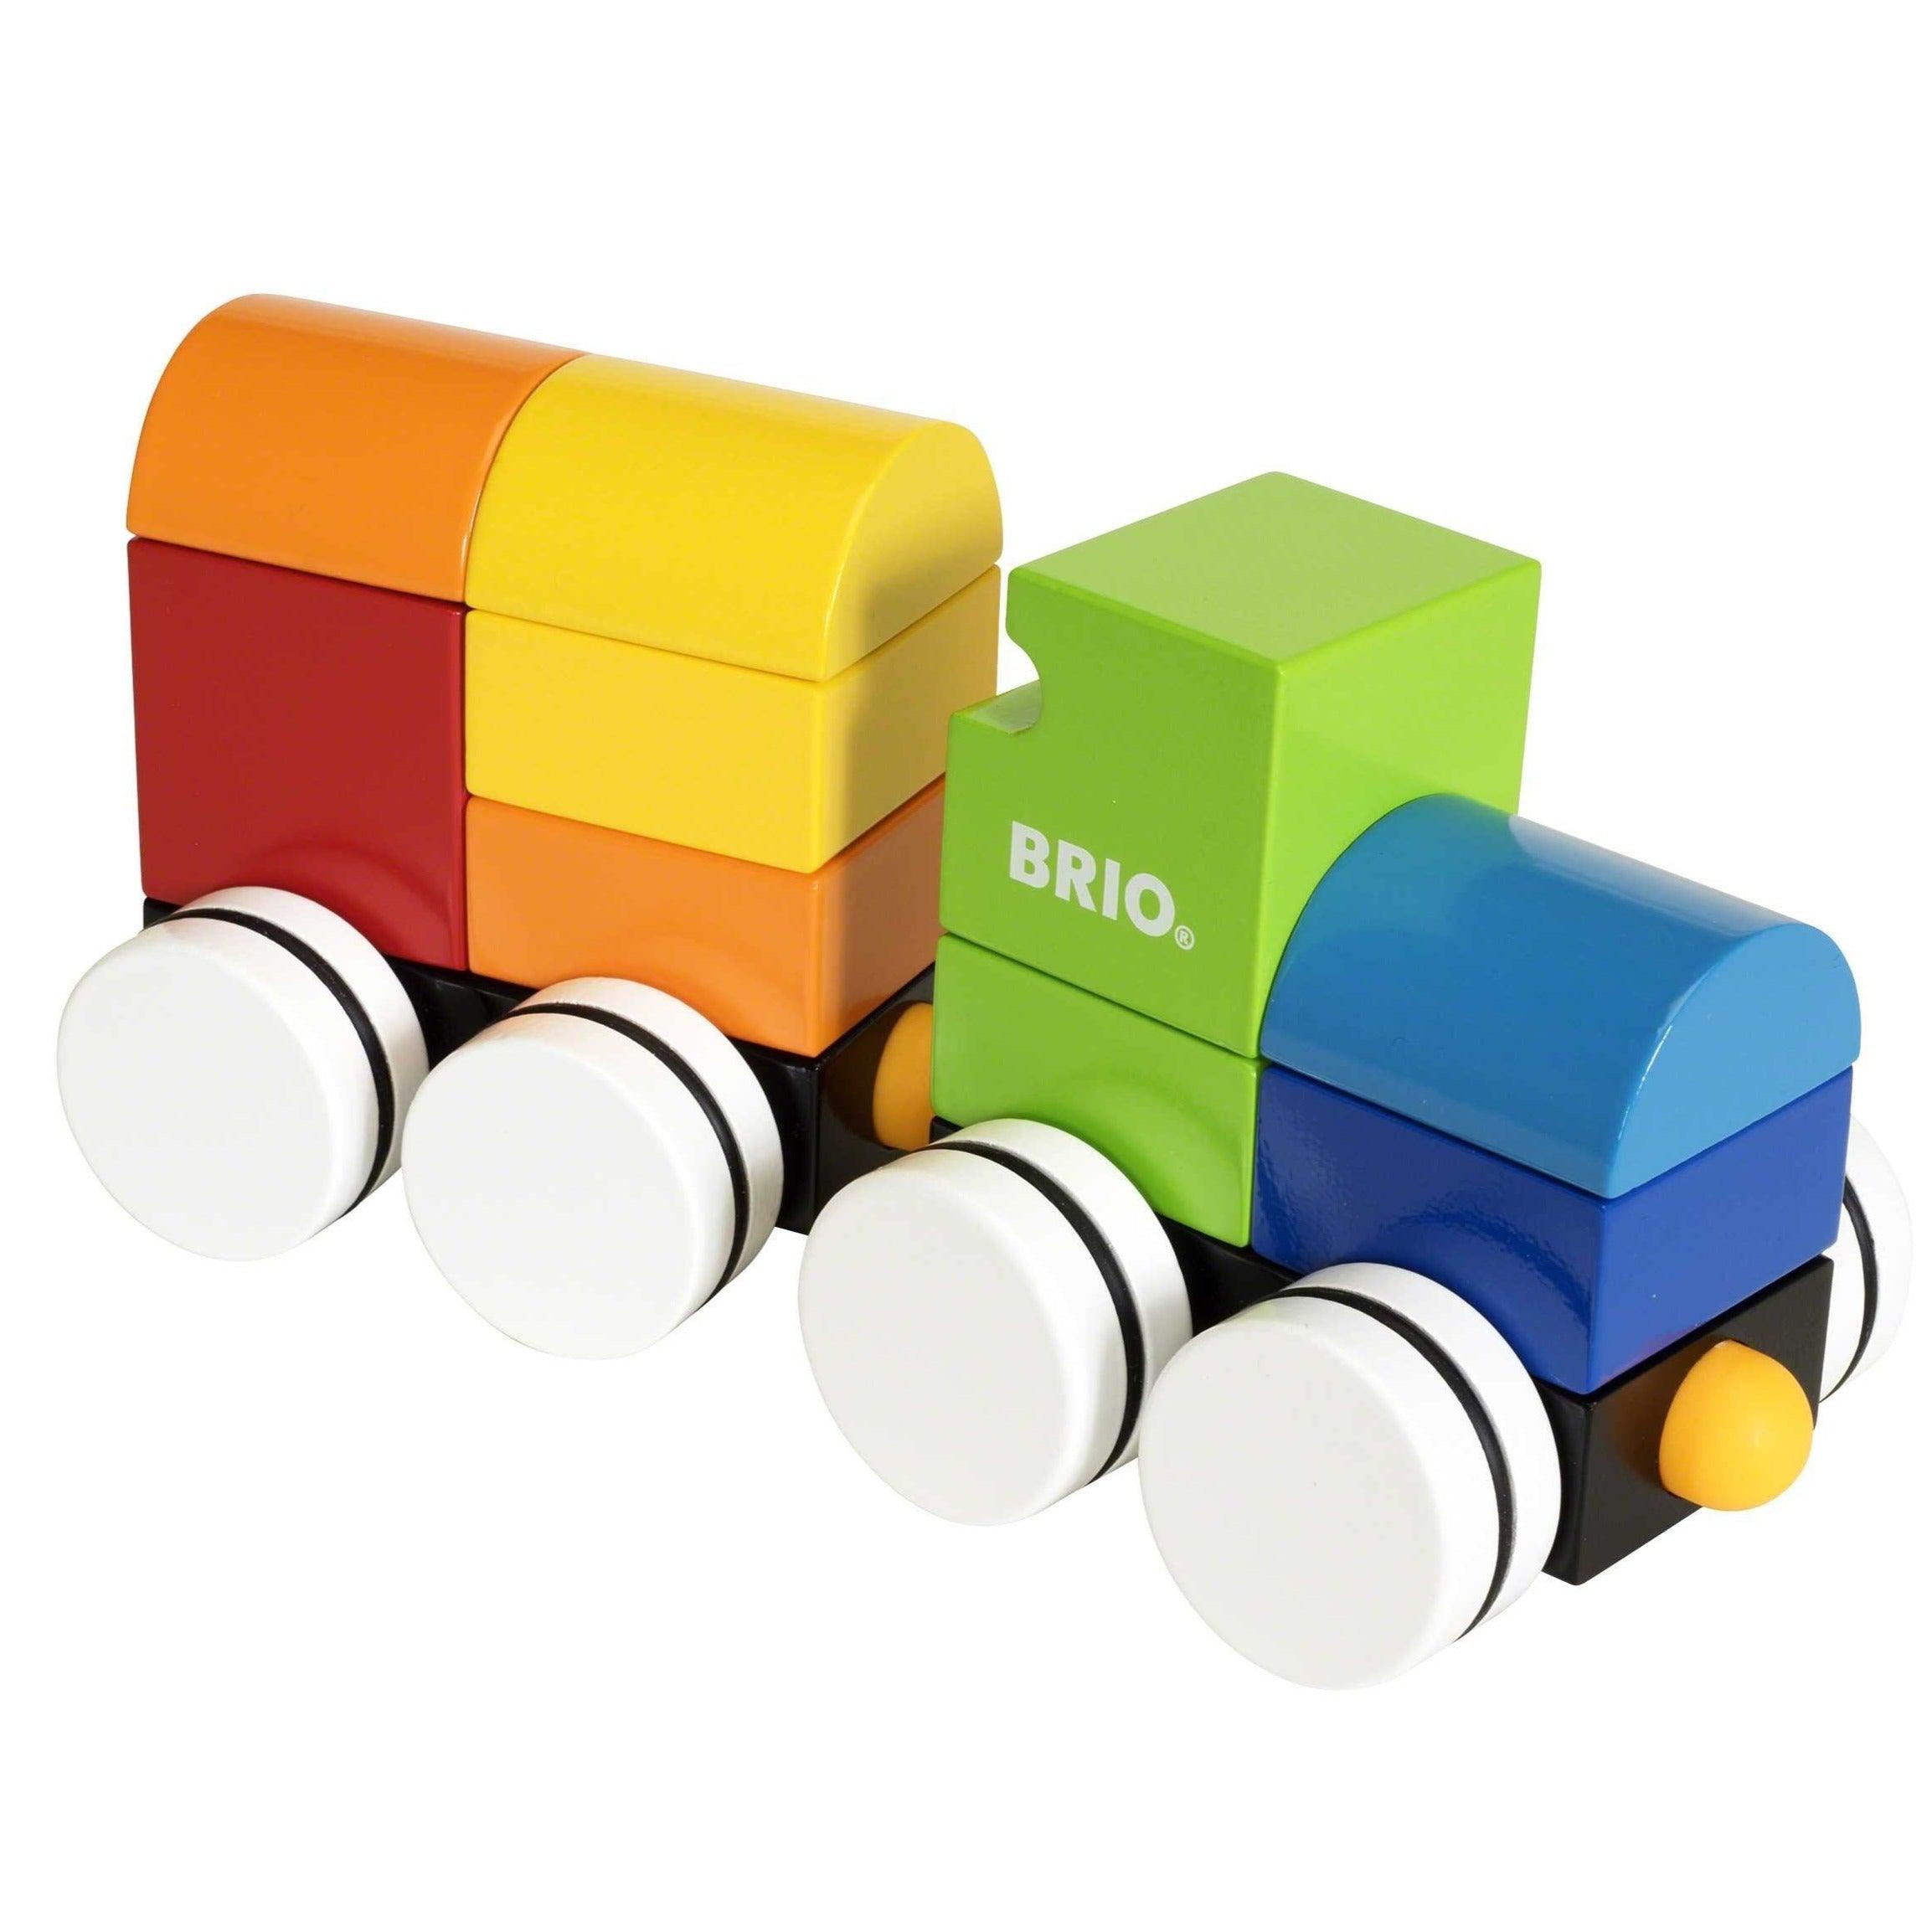 BRIO: drewniany pociąg z magnesami Magnetic Train - Noski Noski